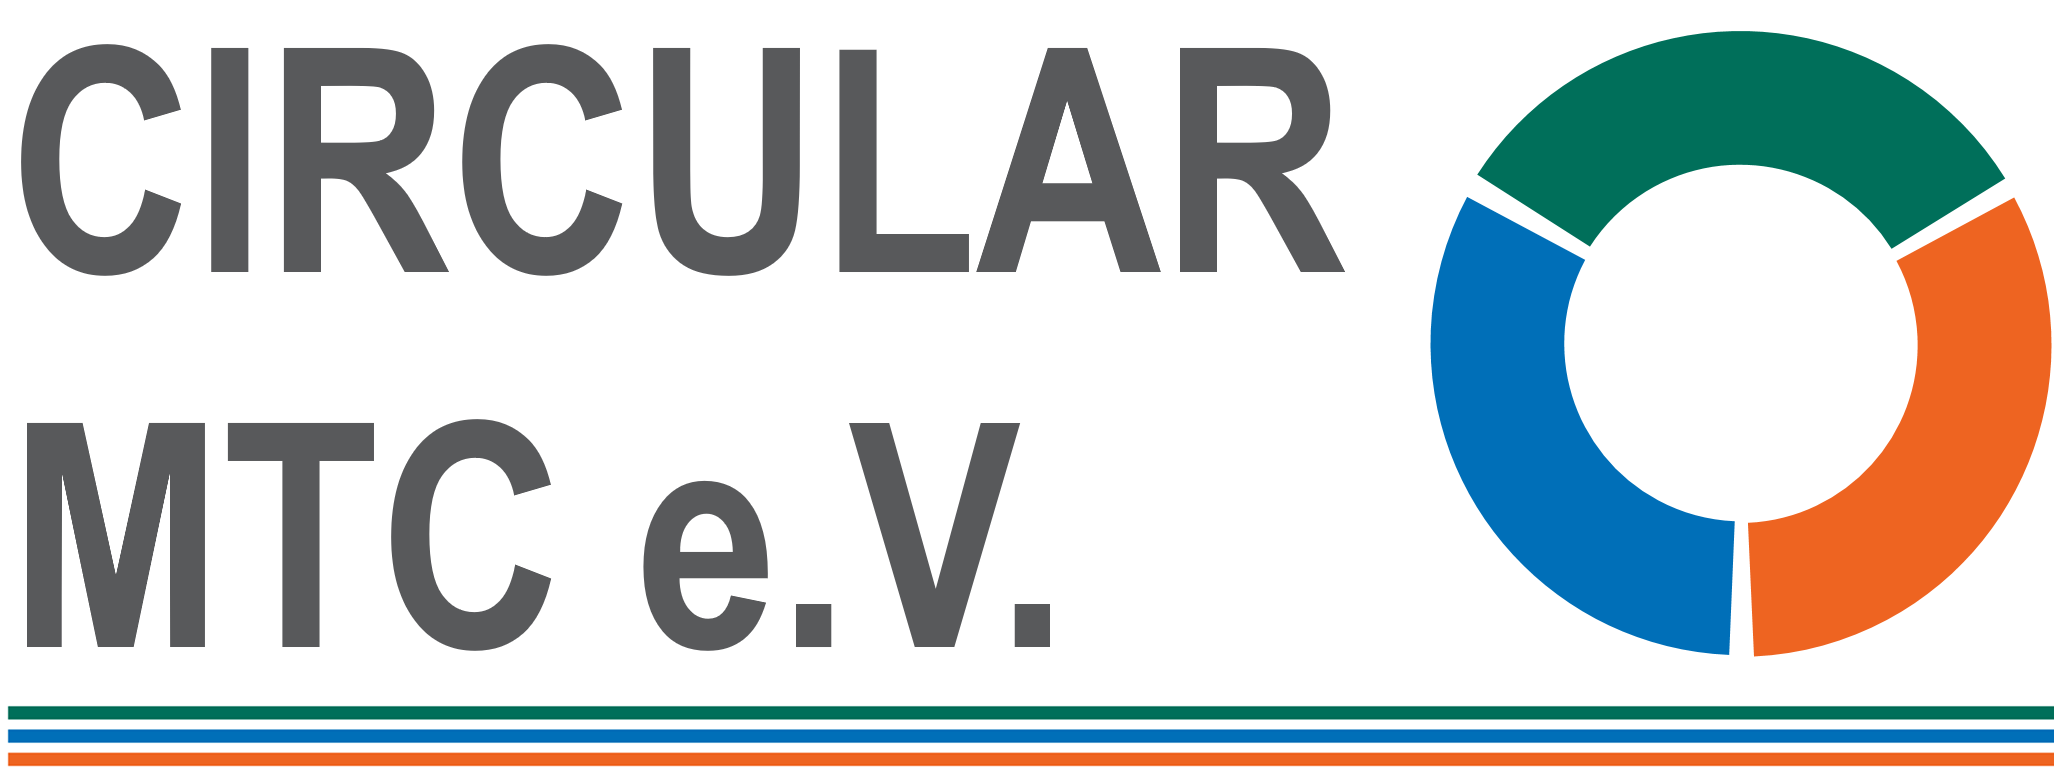 Circular MTC eV Logo